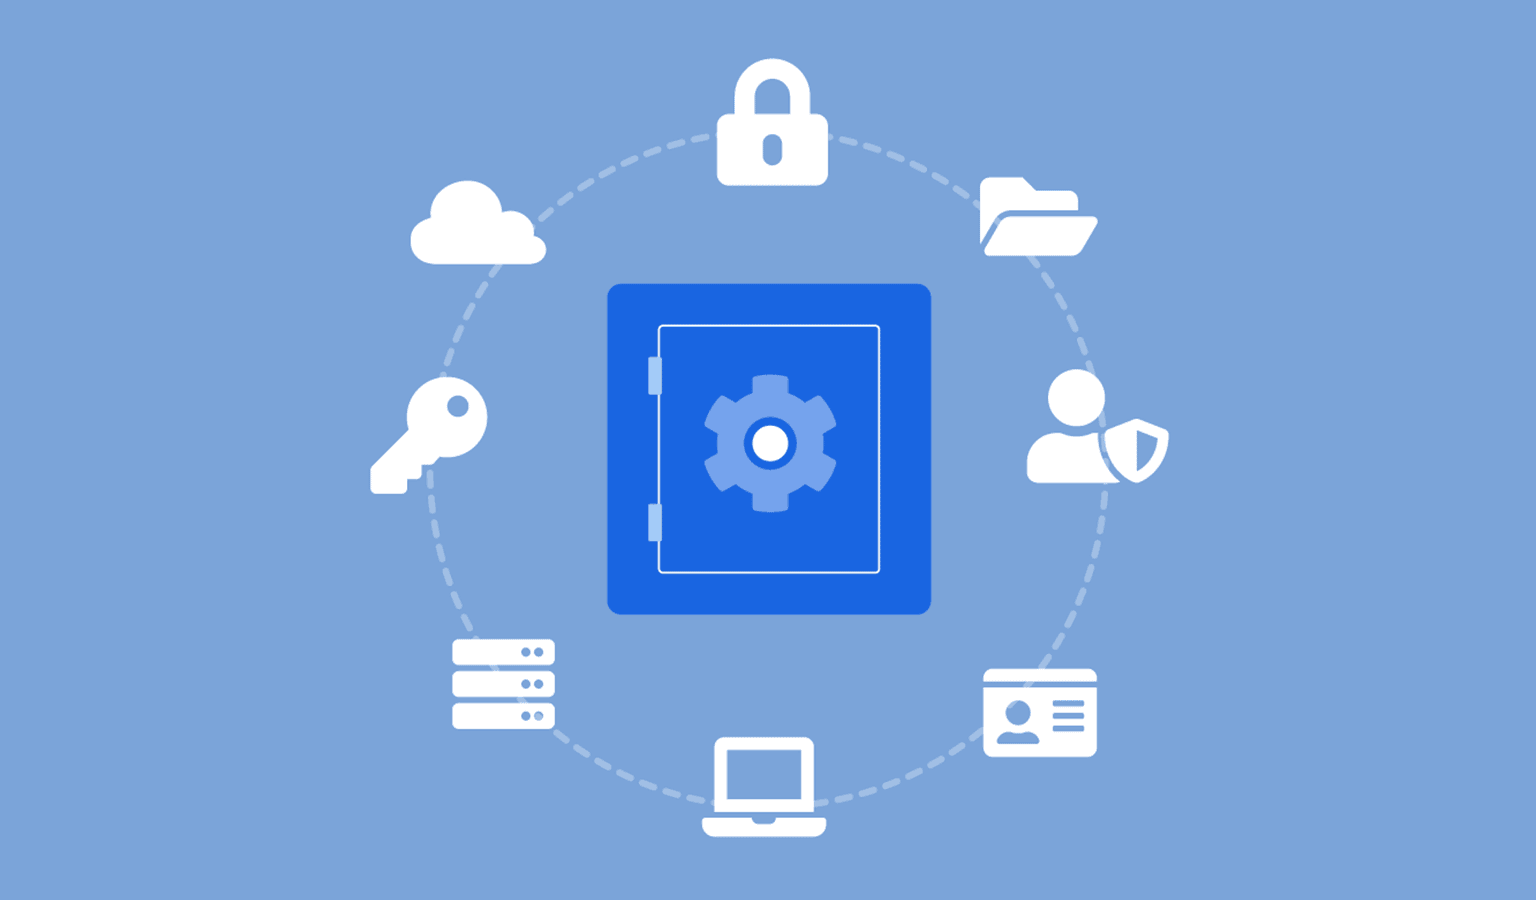 Fundal albastru deschis cu seif albastru închis în mijloc înconjurat de icoane albe, lacăt, nor, cheie, server, fișiere, computer